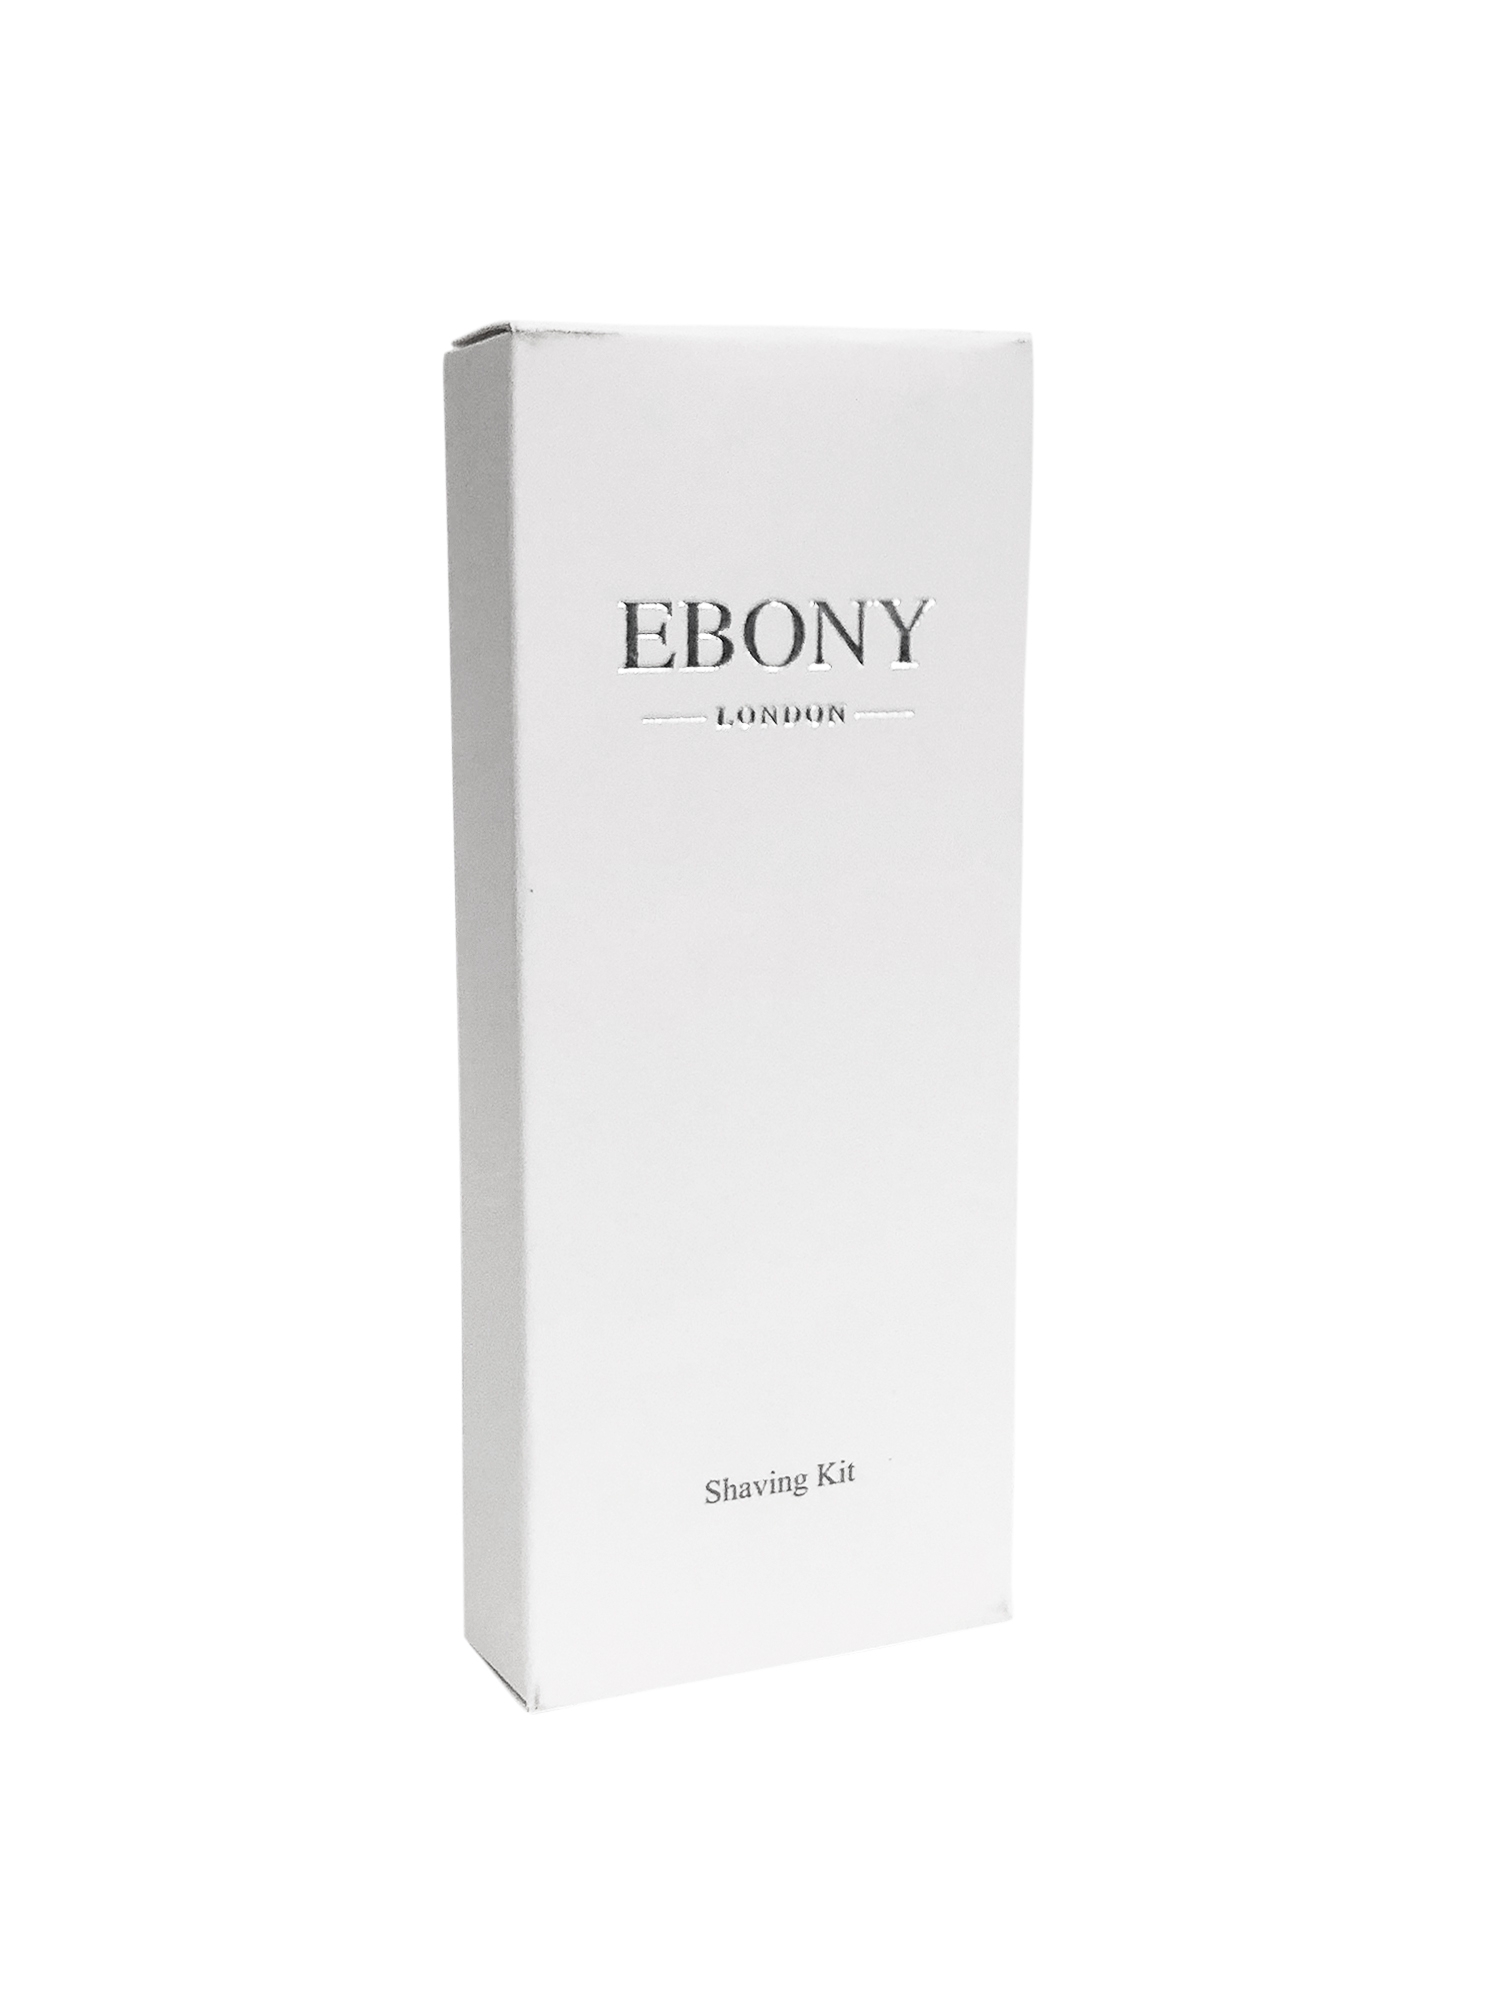 Ebony London Shaving Kit - Matte Black Or White Box Options